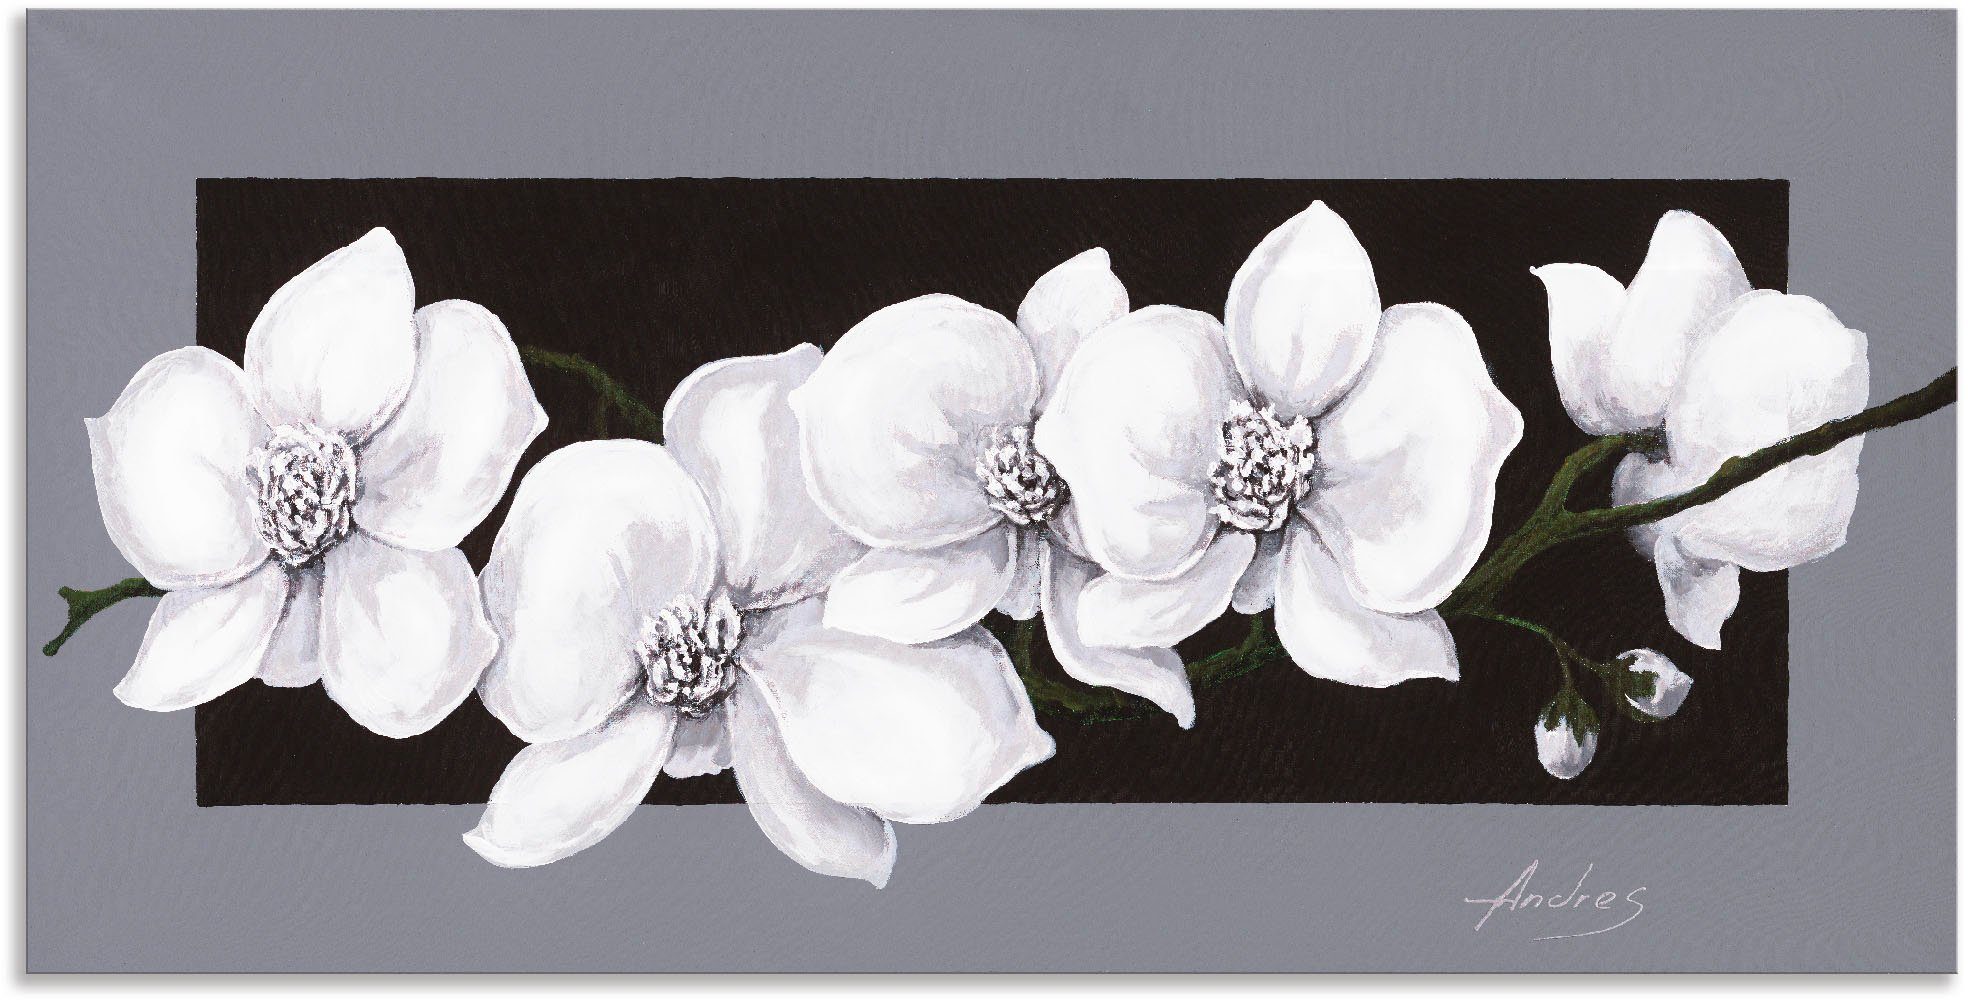 Artland Artprint Witte orchideeën op grijs in vele afmetingen & productsoorten - artprint van aluminium / artprint voor buiten, artprint op linnen, poster, muursticker / wandfolie